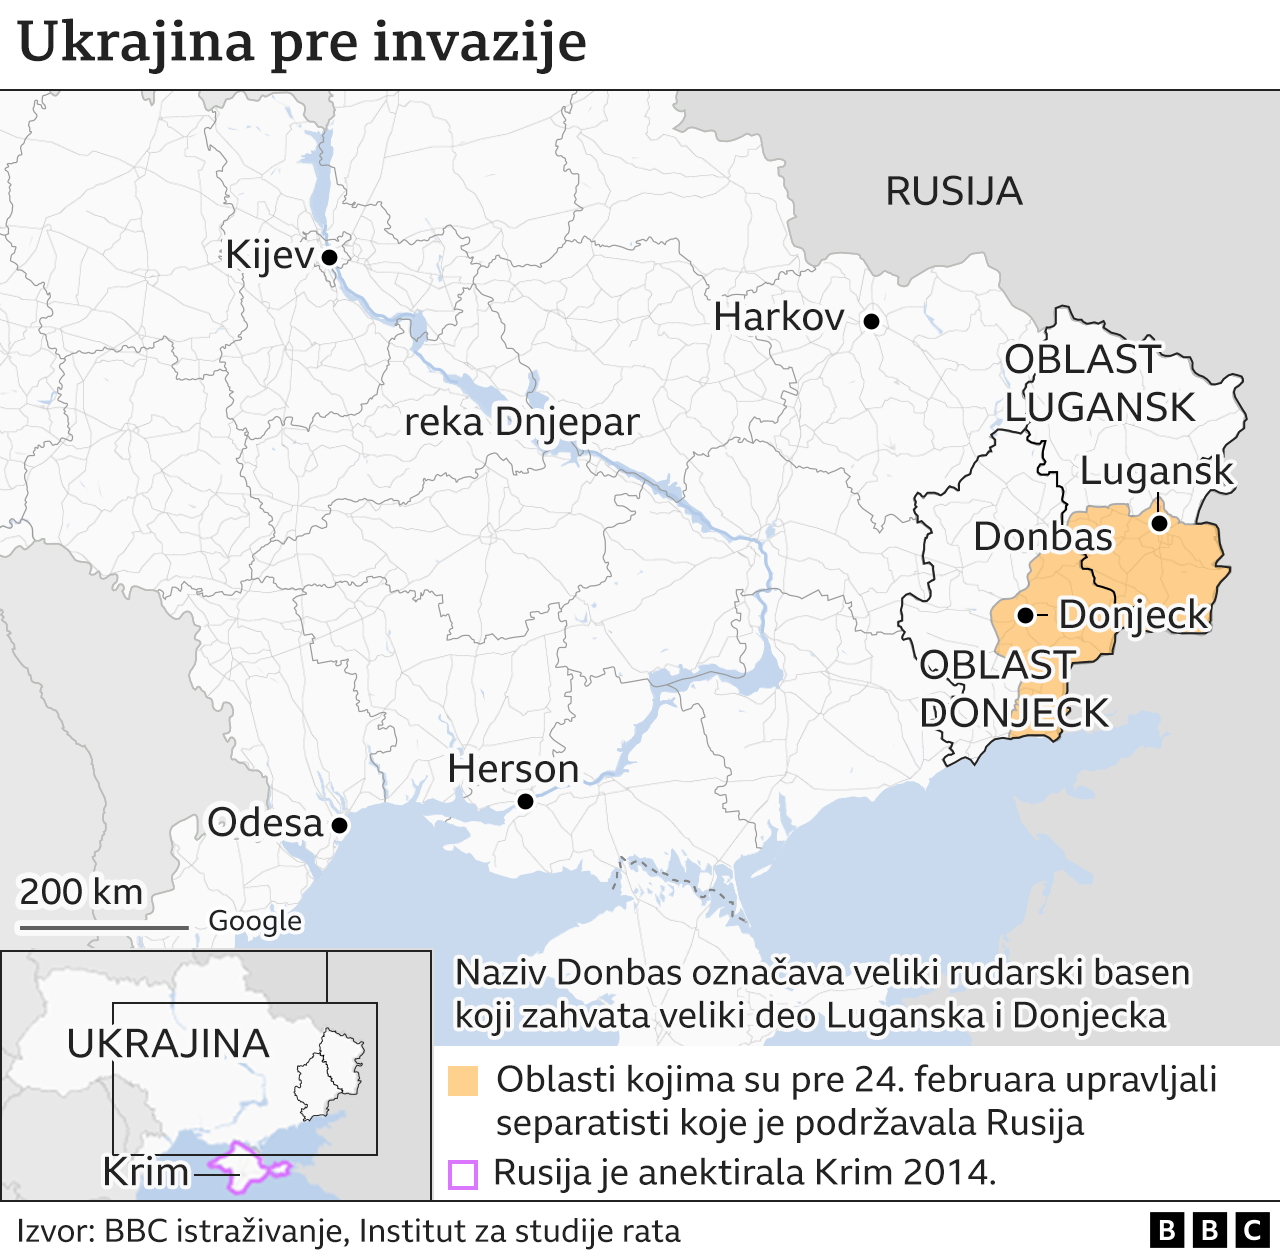 Mapa Ukrajine pre invazije